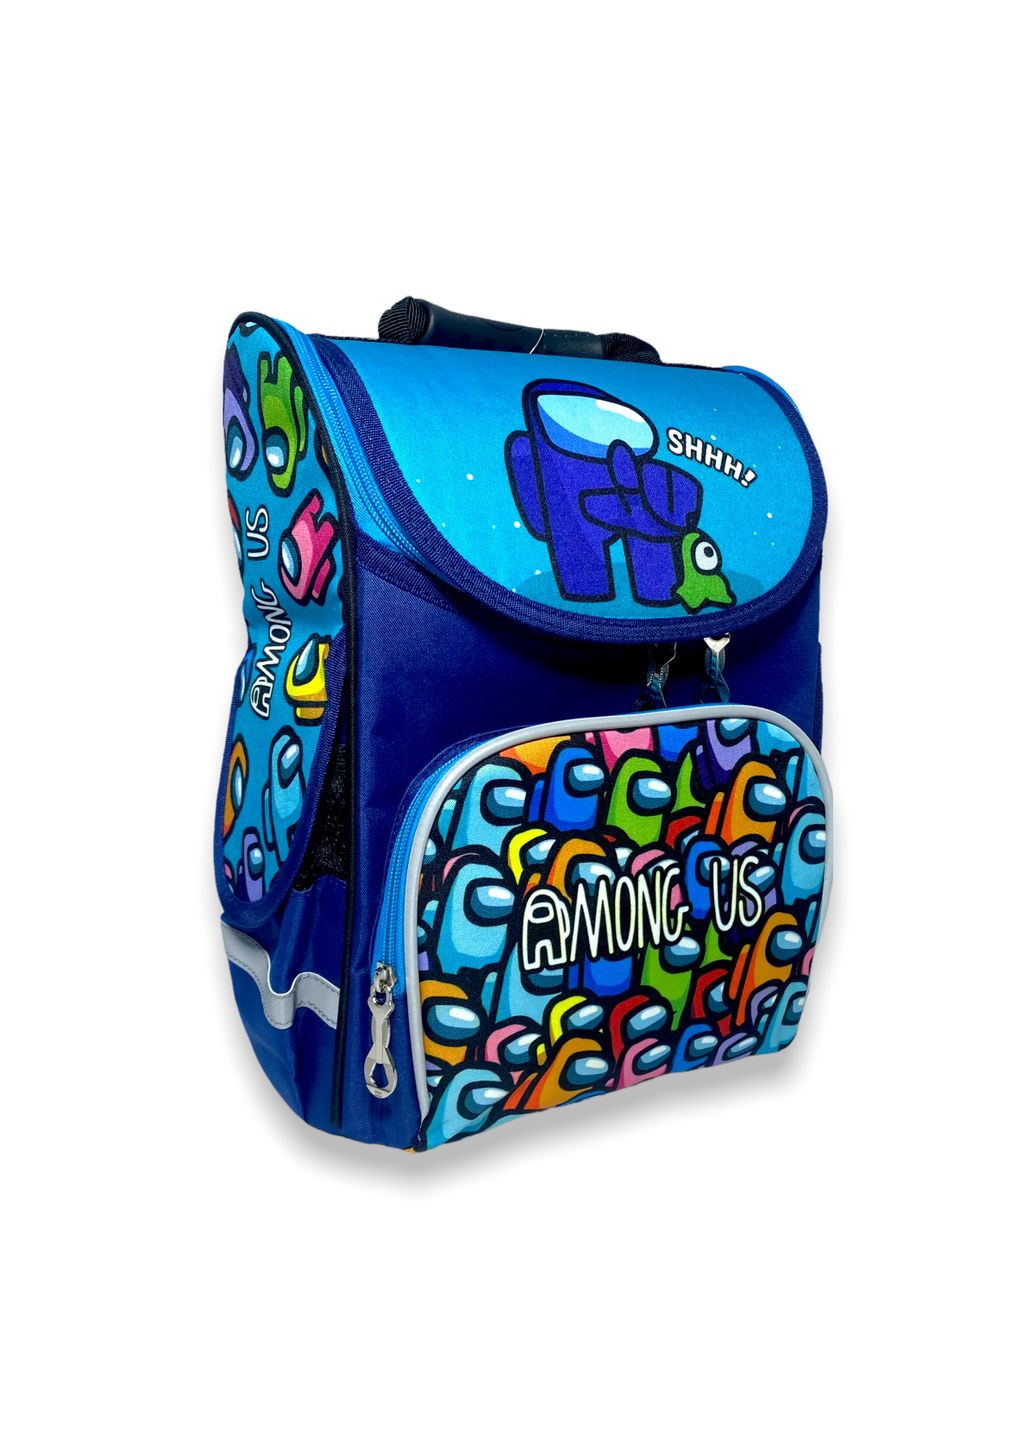 Рюкзак, для мальчика младших классов 988990,одно отделение ортопедический, размер: 35*25*13 см, синий Space (284337853)